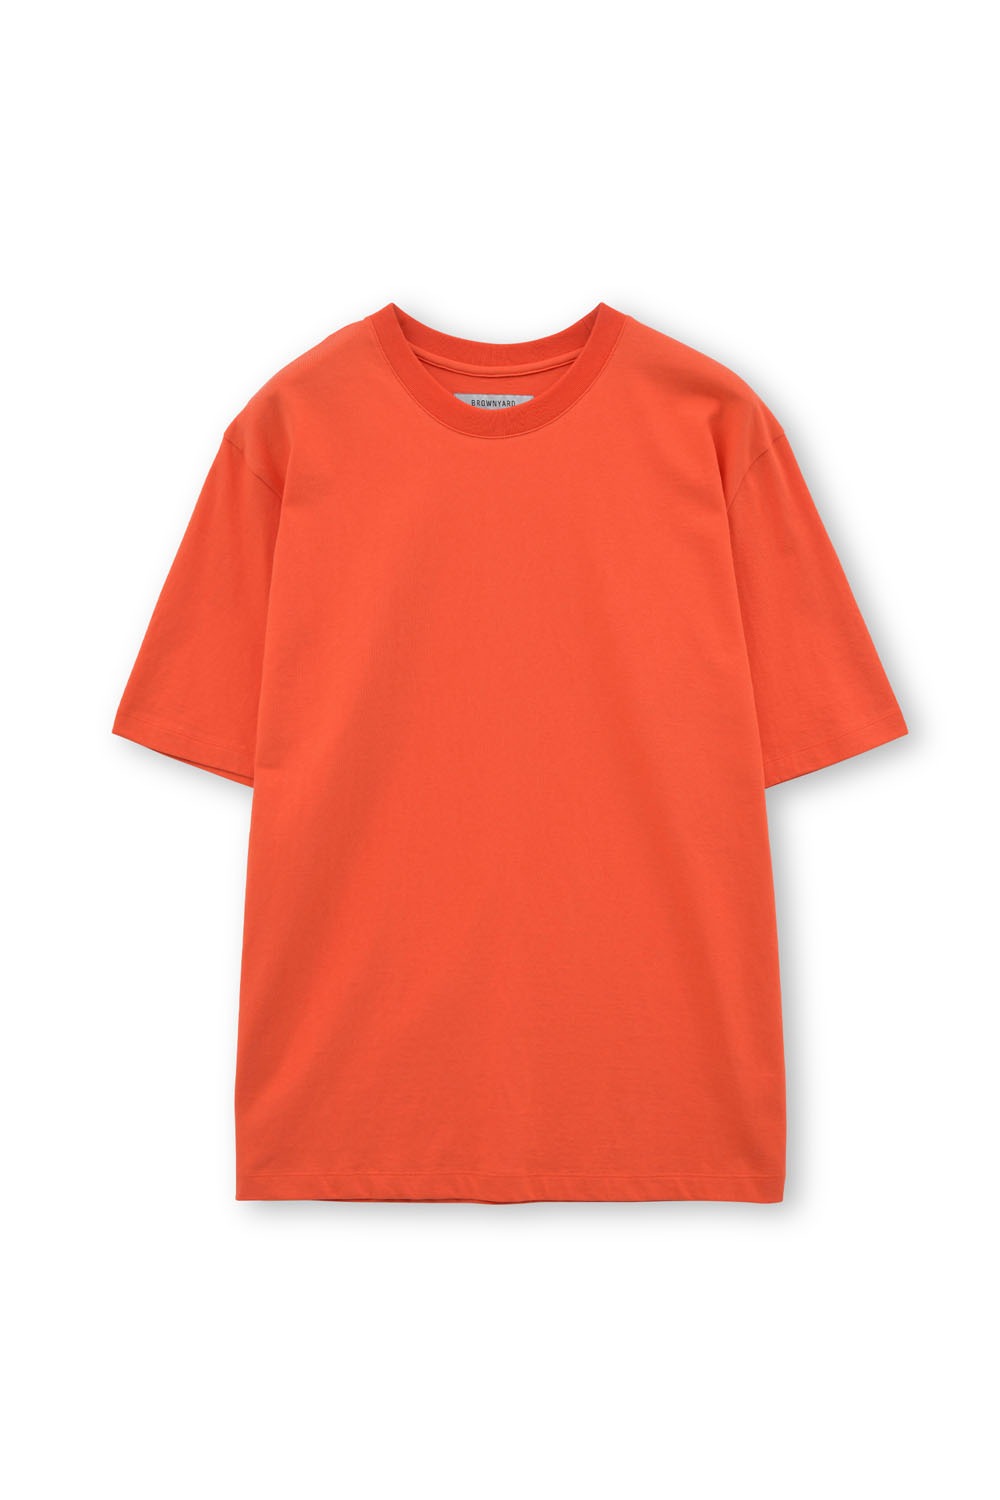 Essential T Shirt-Orange